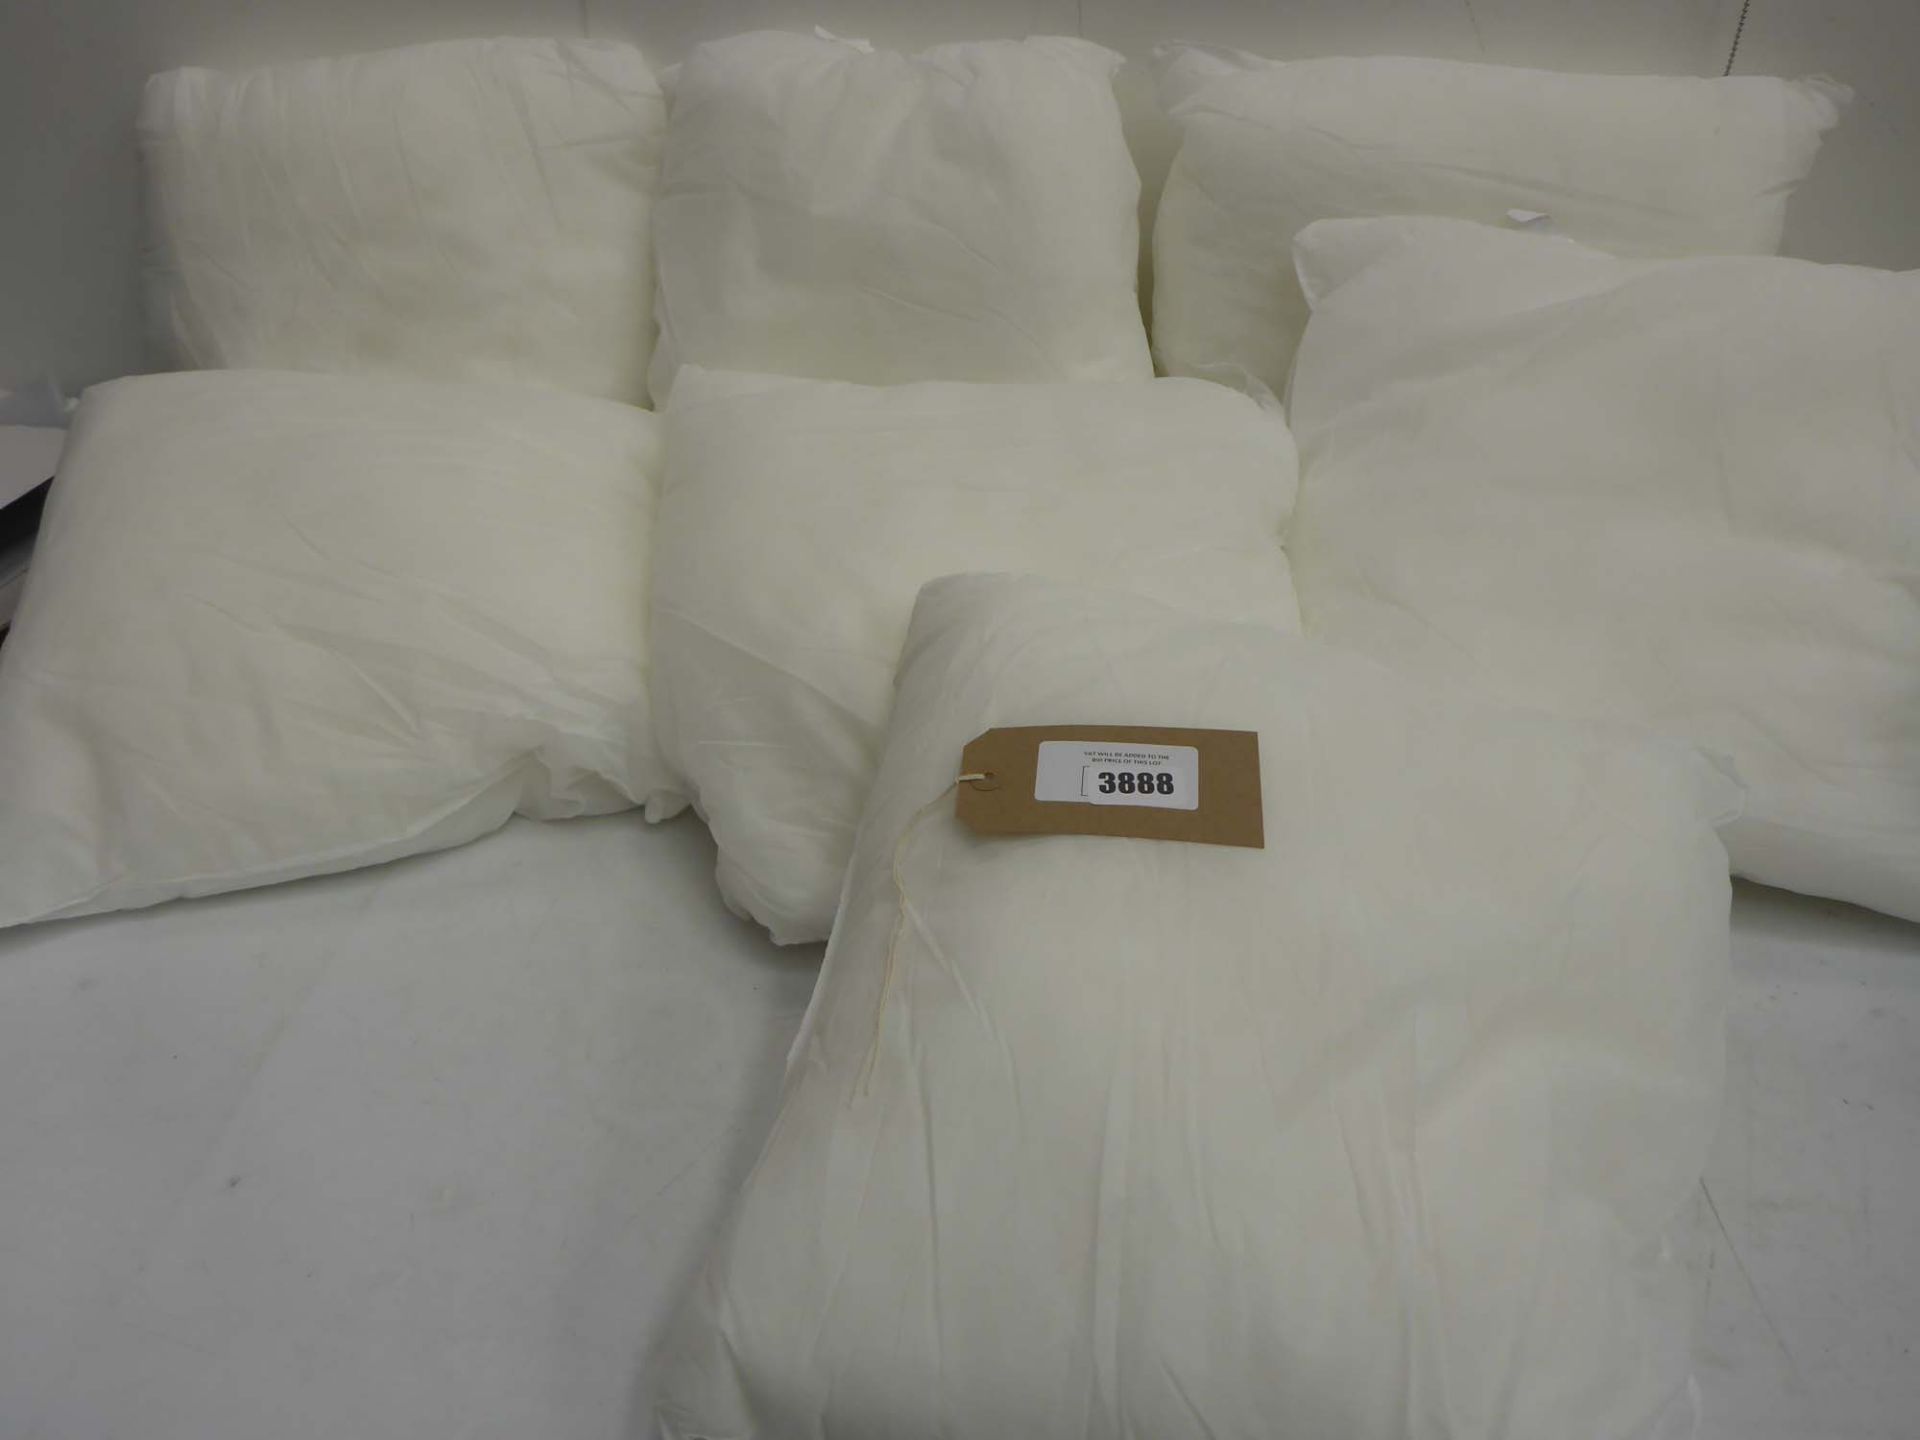 7 x inner cushion pads